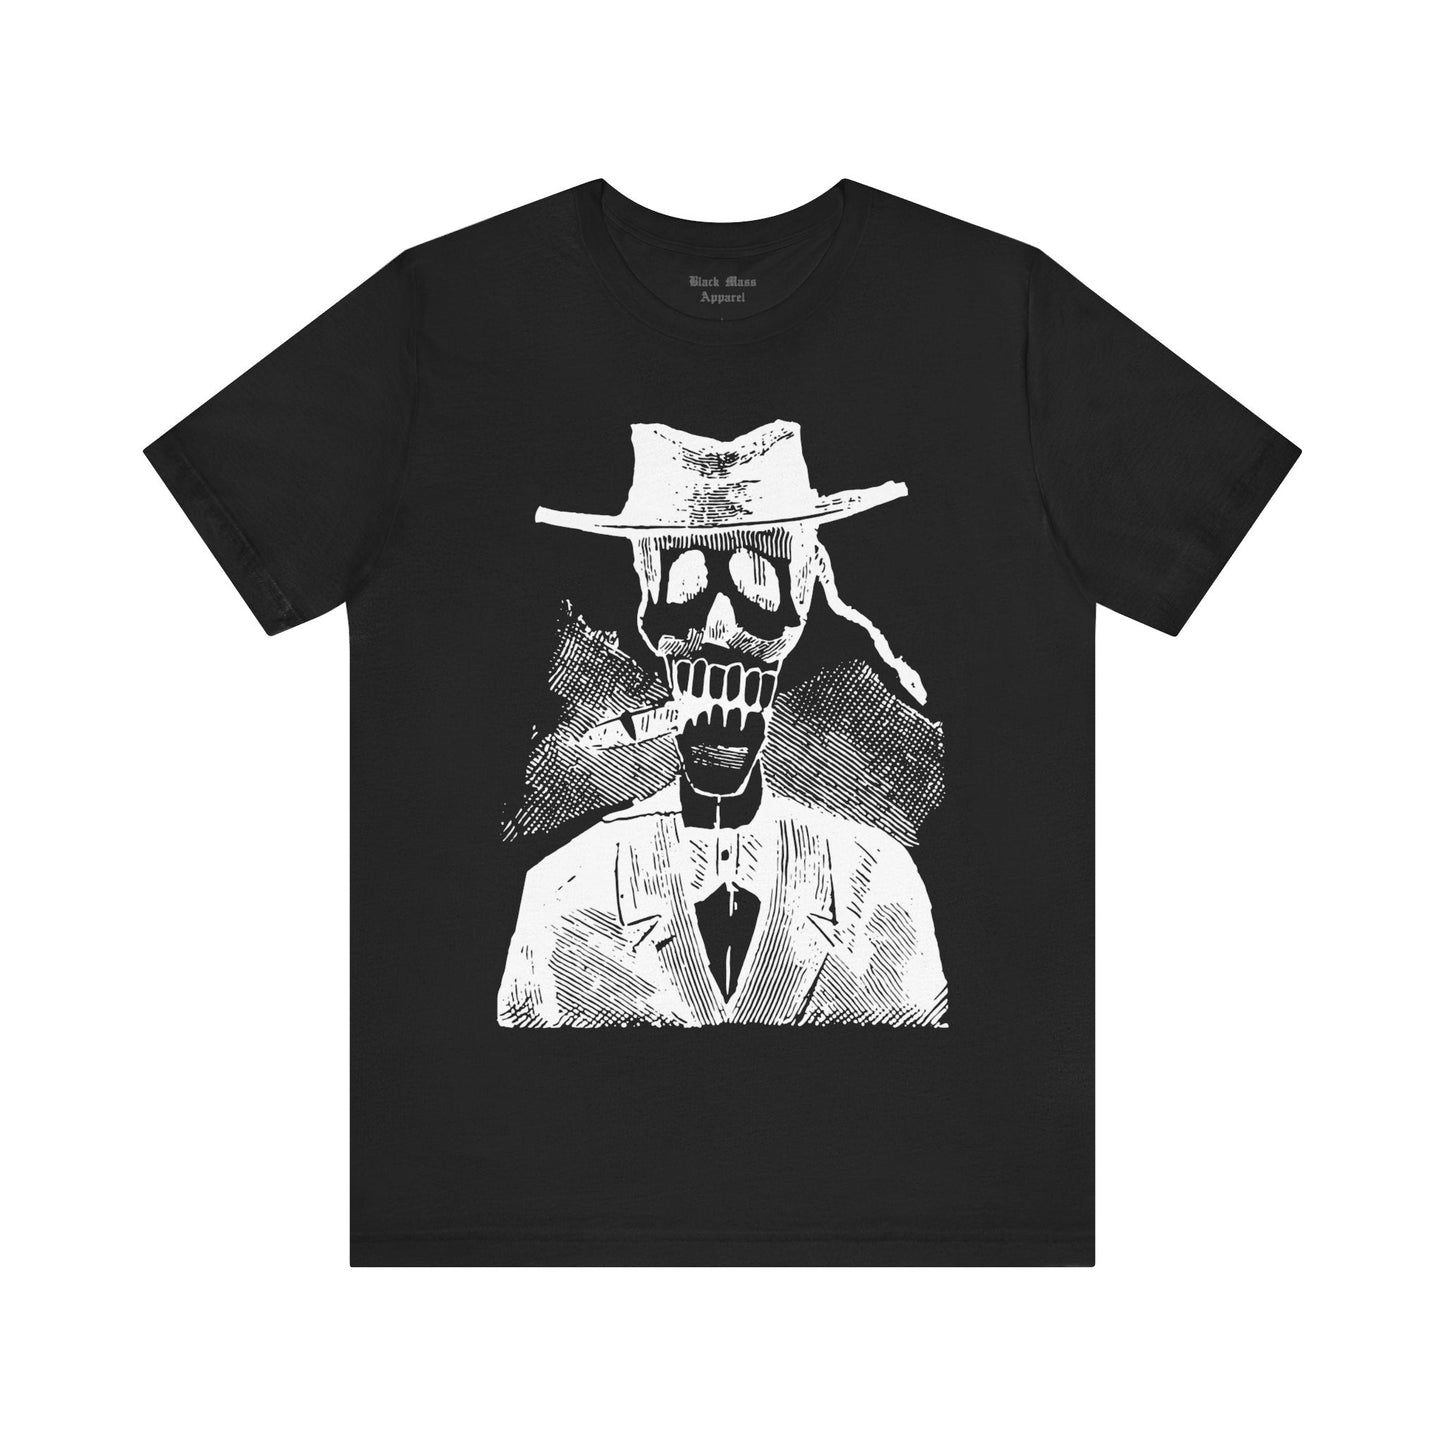 Calavera Poncianista - Black Mass Apparel - T - Shirt